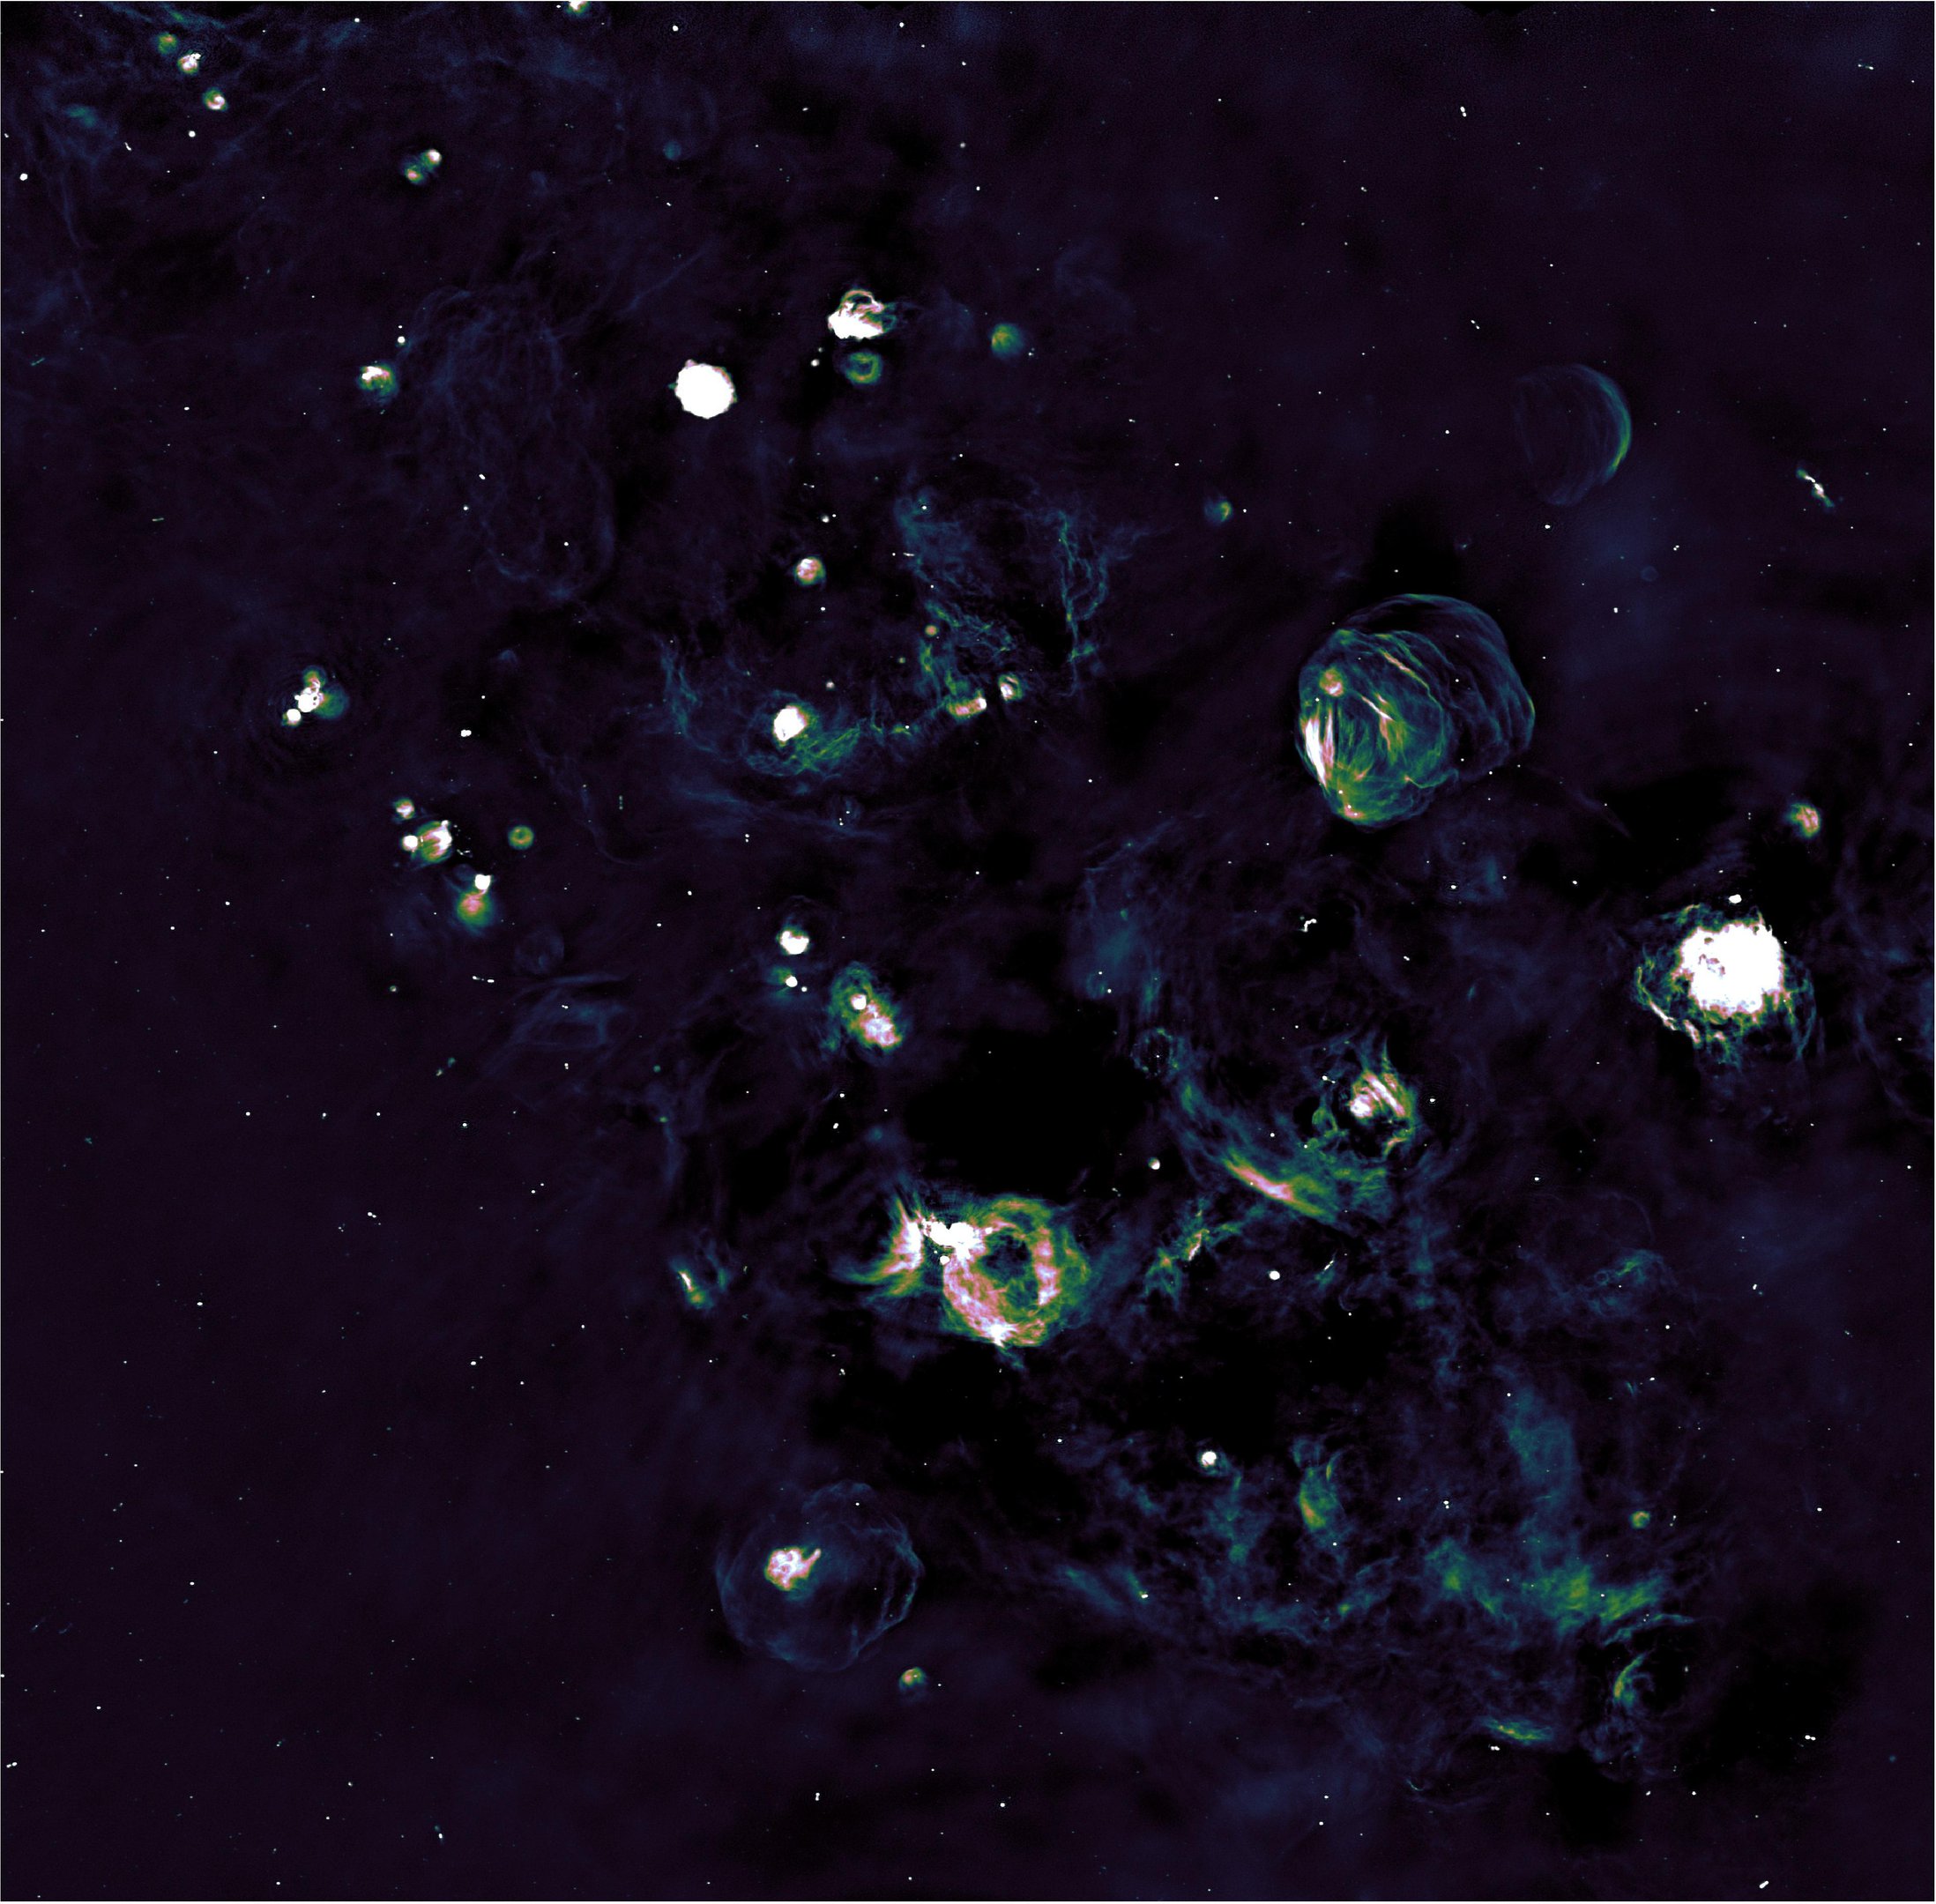 Imagem do telescópio ASKAP, mostrando parte do plano explorado. Os pontos e manchas são as estrelas remanescentes.